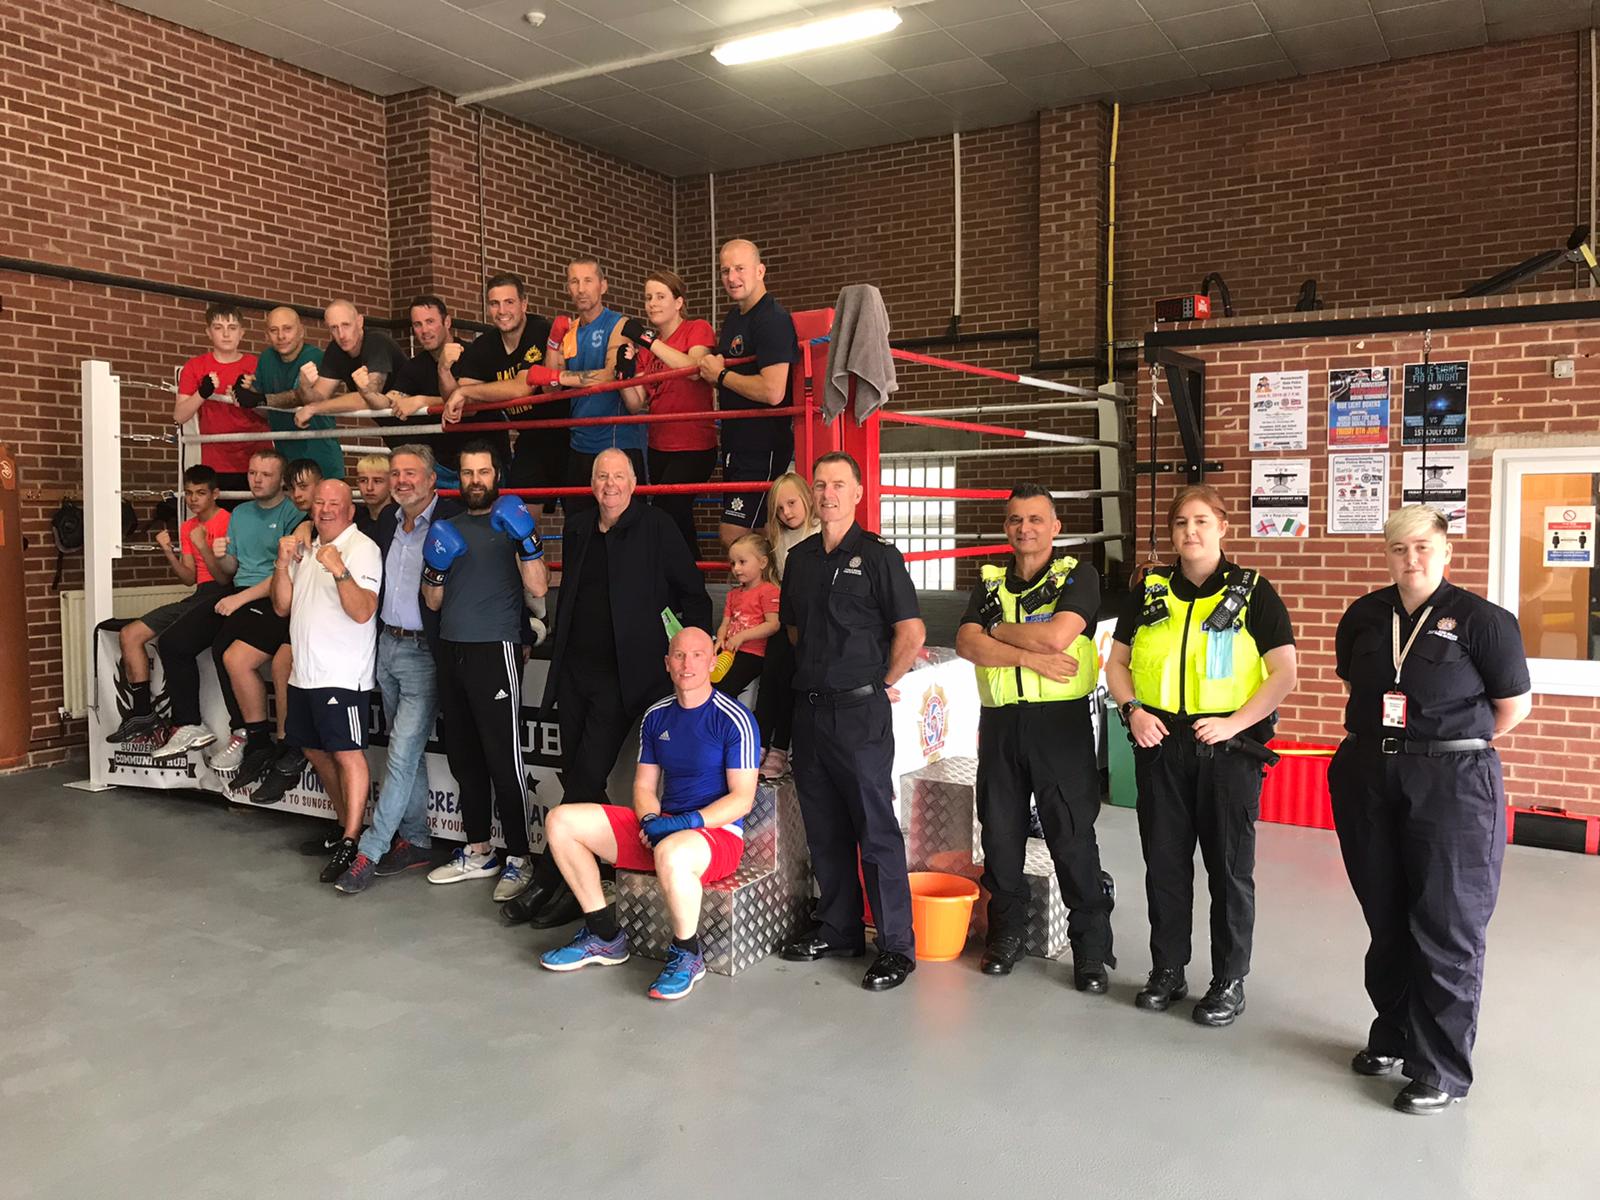 Members of The Sunderland Community Hub (SCH) with boxer Glenn McCrory 